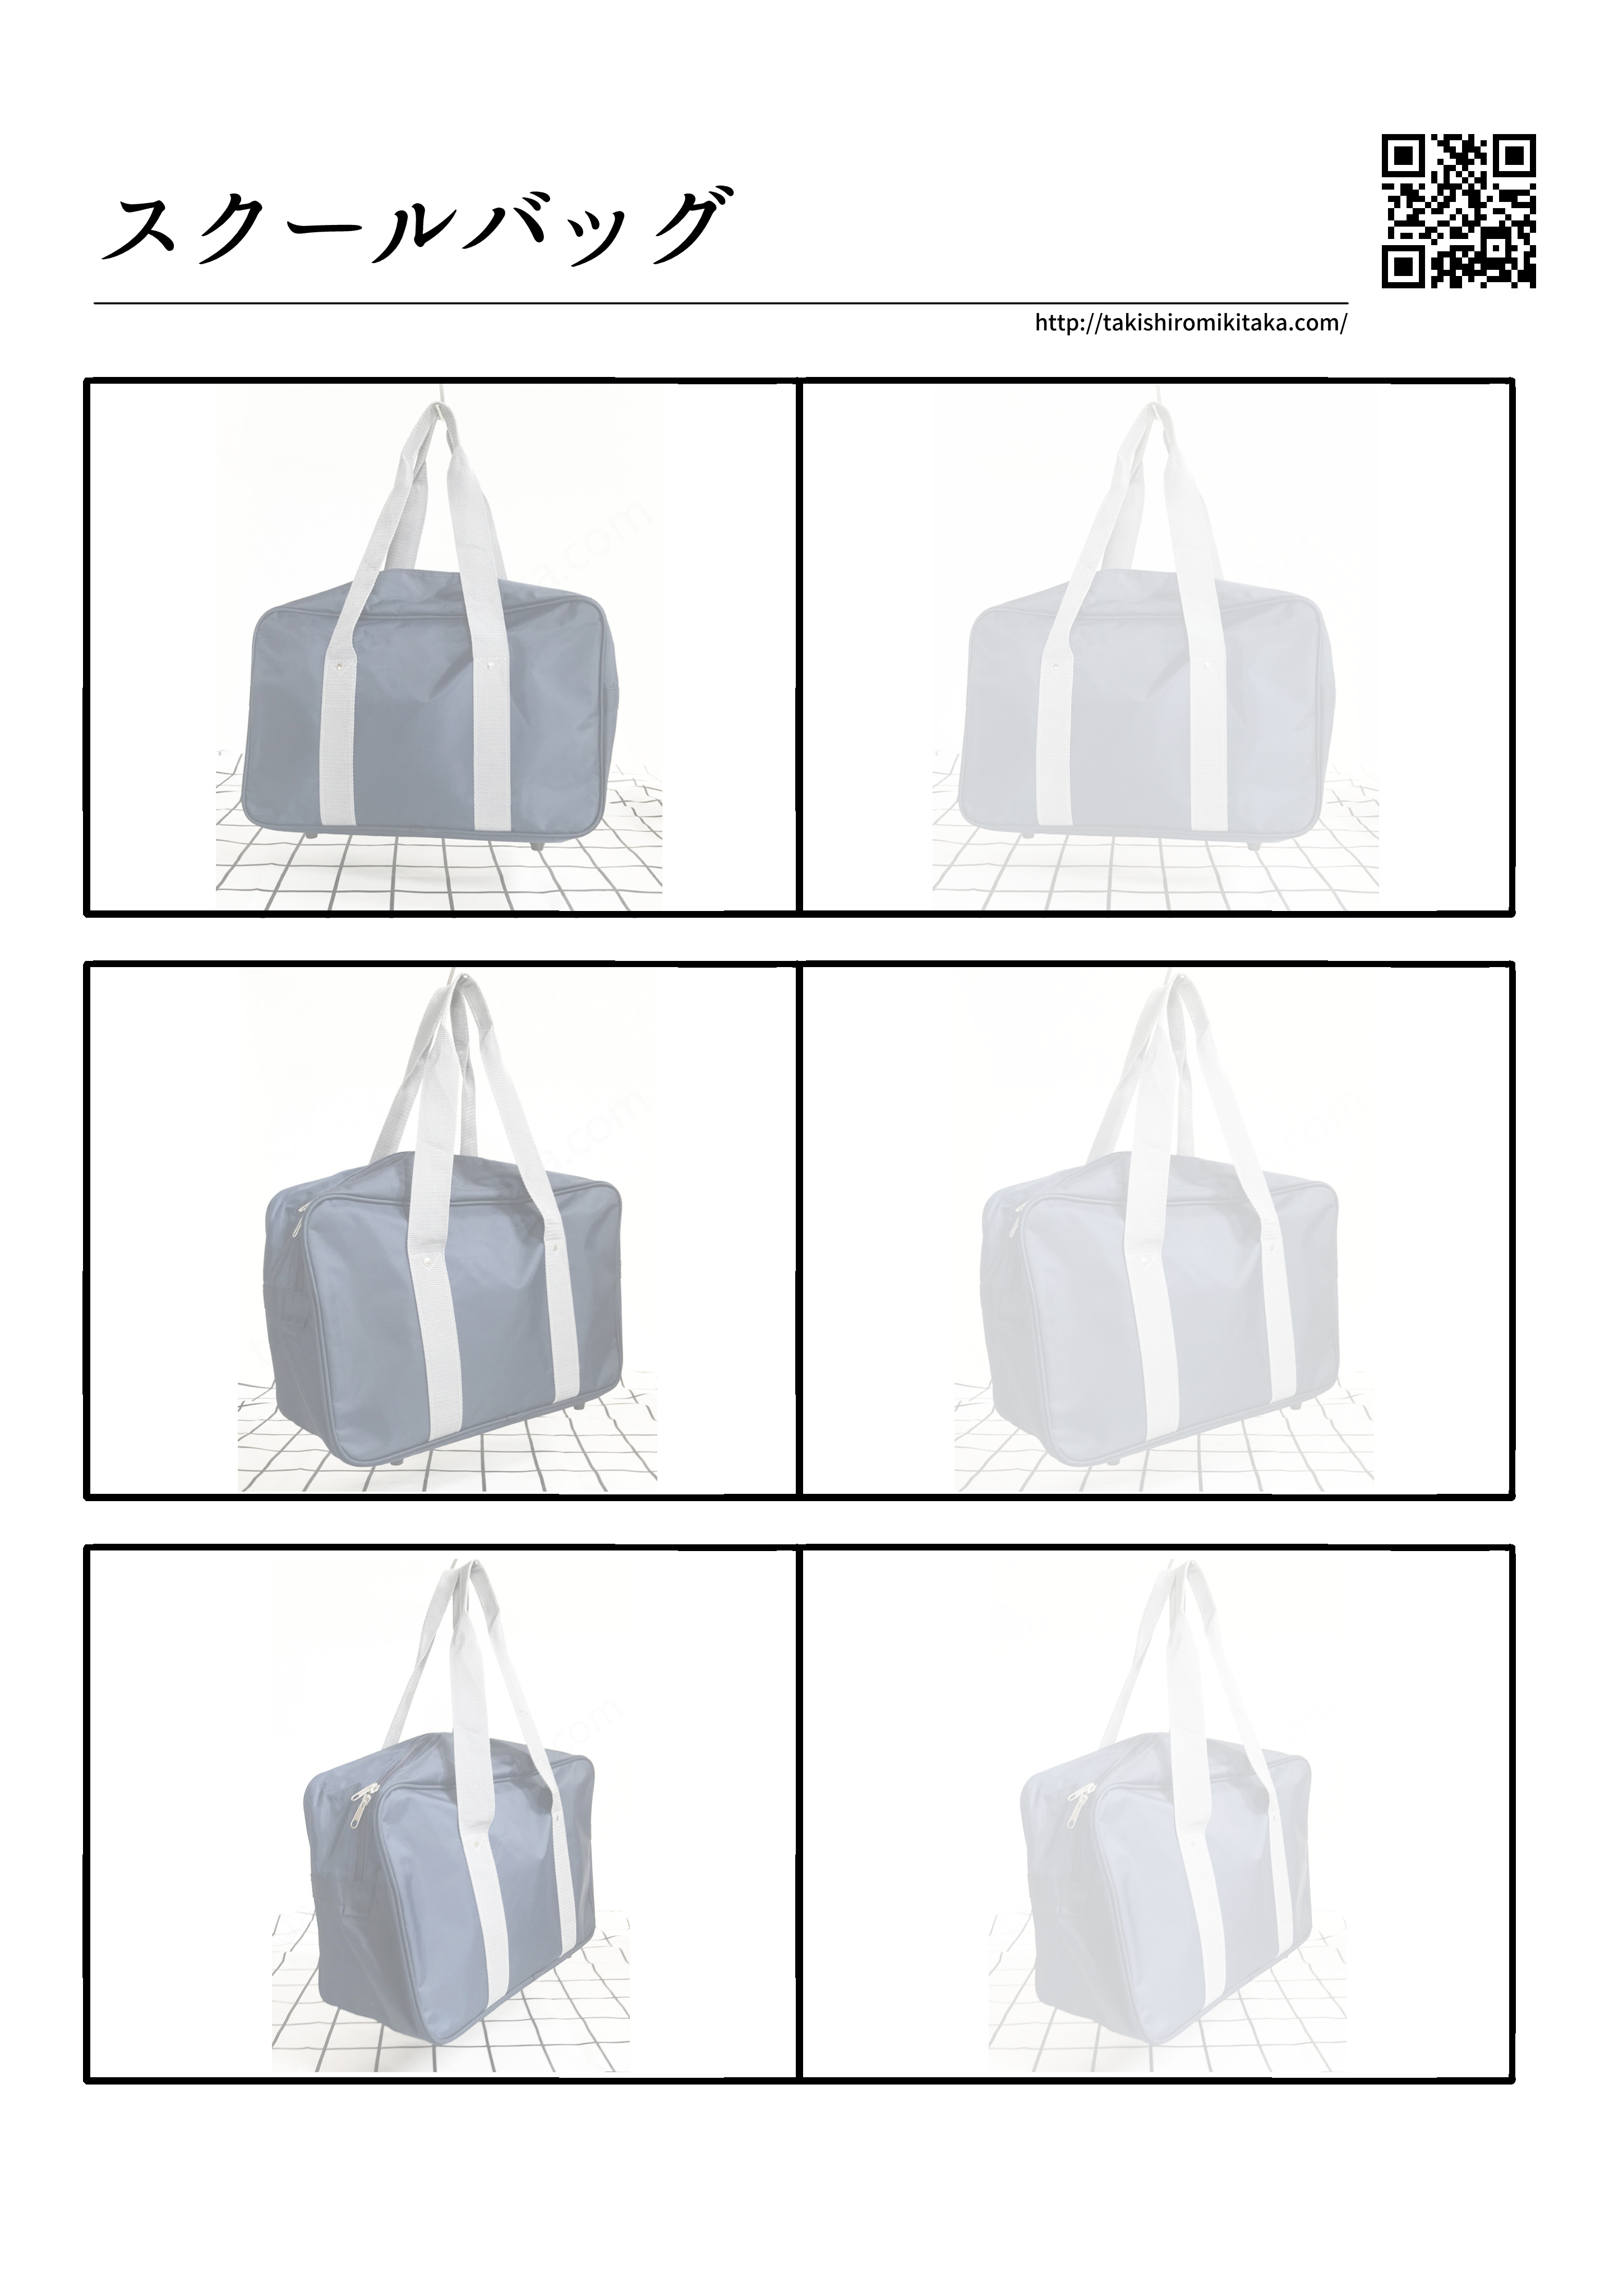 スクールバッグ の描き方 写真 線画 練習用印刷データ 滝城みきたか公式サイト